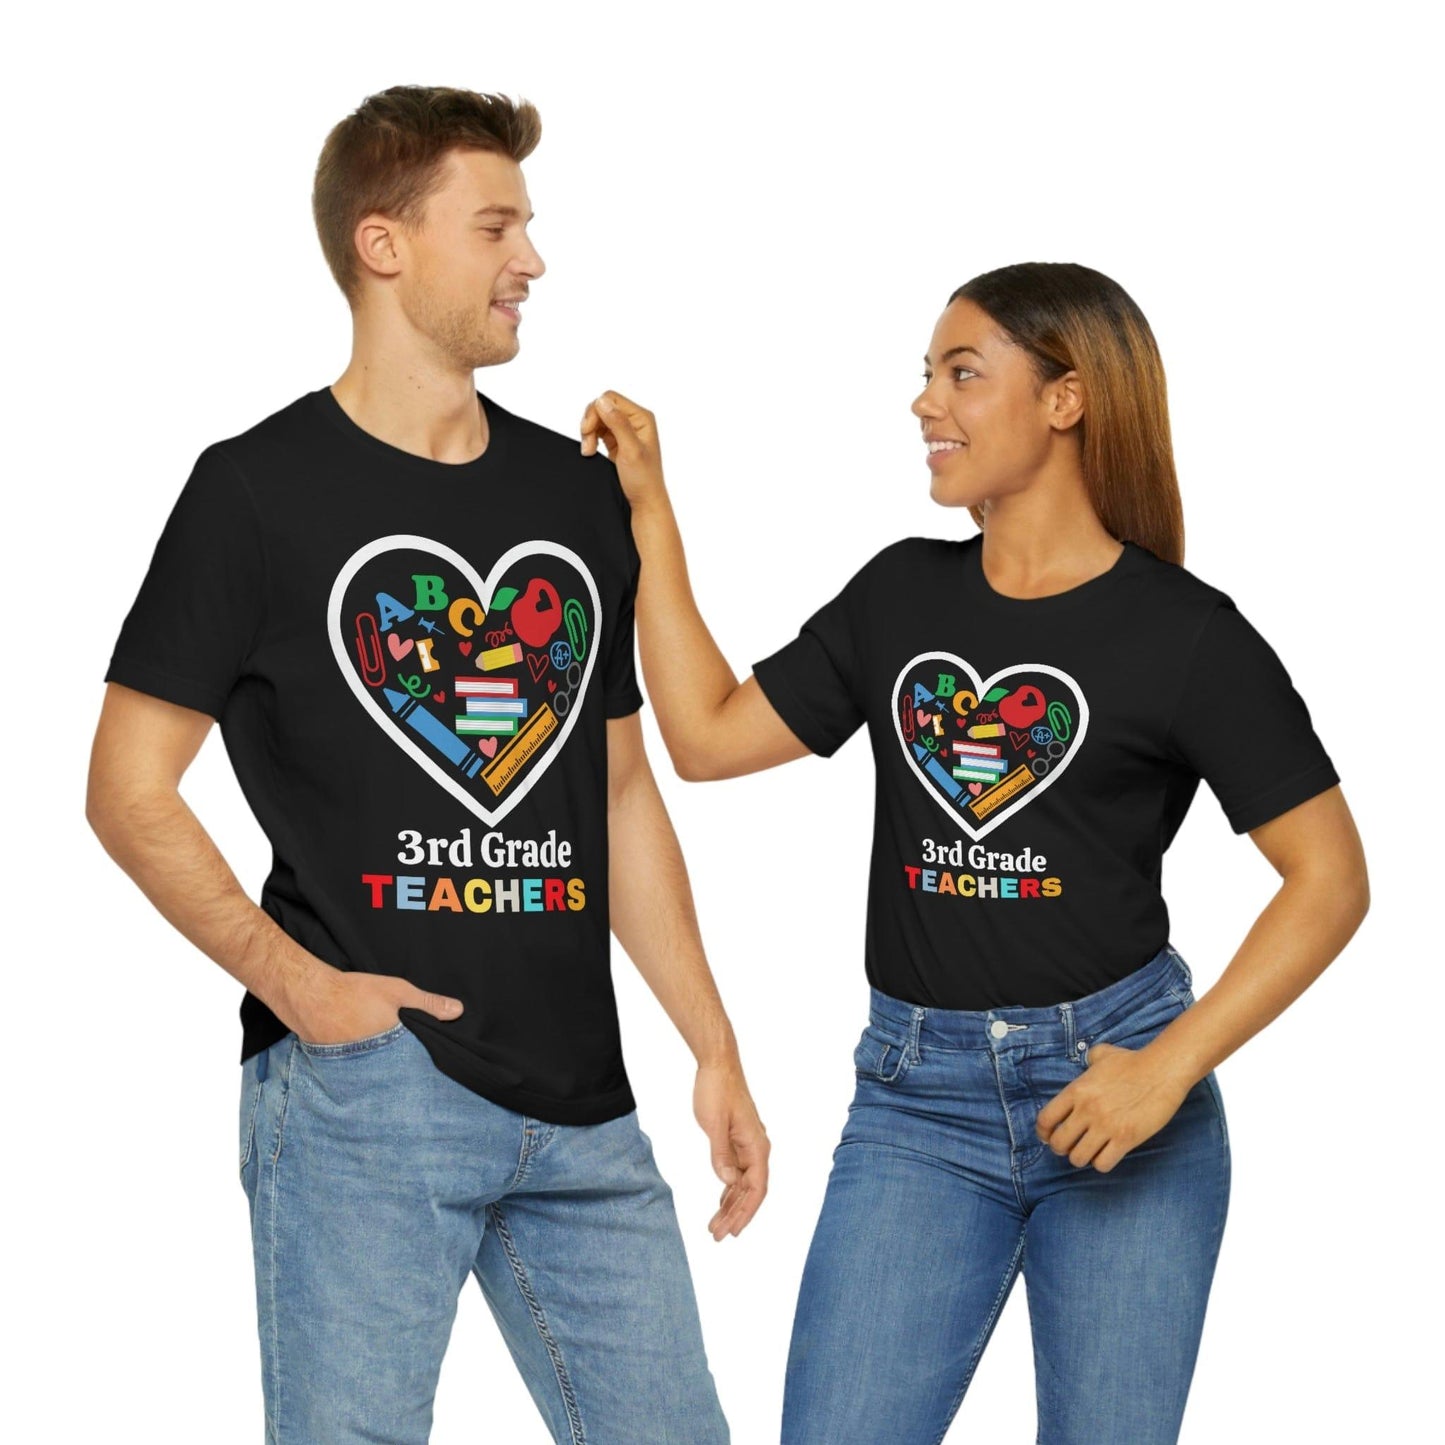 Love 3rd Grade Teacher Shirt - Teacher Appreciation Shirt - Gift for Teachers - 3rd Grade shirt - Giftsmojo